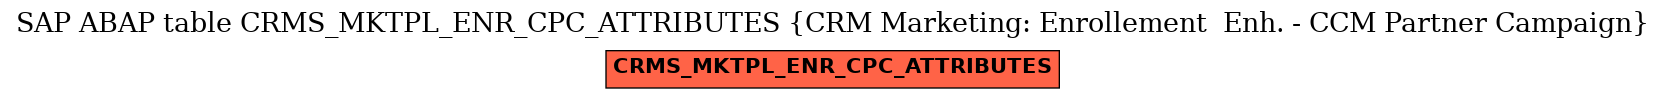 E-R Diagram for table CRMS_MKTPL_ENR_CPC_ATTRIBUTES (CRM Marketing: Enrollement  Enh. - CCM Partner Campaign)